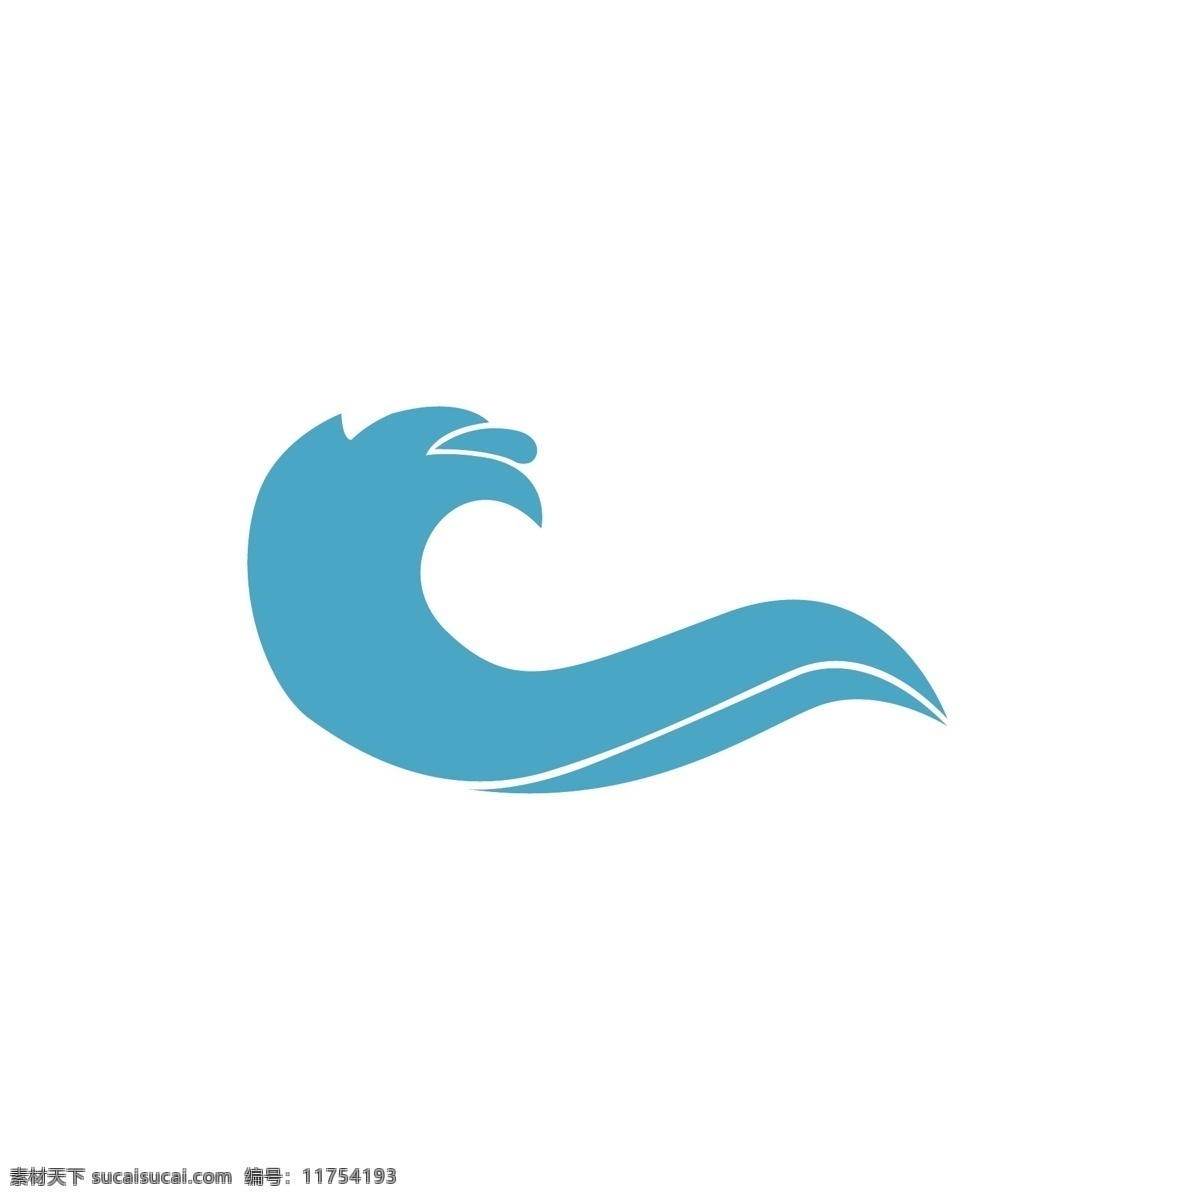 海面浪花图标 浪花 蓝色图标 海浪线 波浪线 波浪曲线 蓝色线条 标识 logo 海面水面 海浪曲线 海浪logo